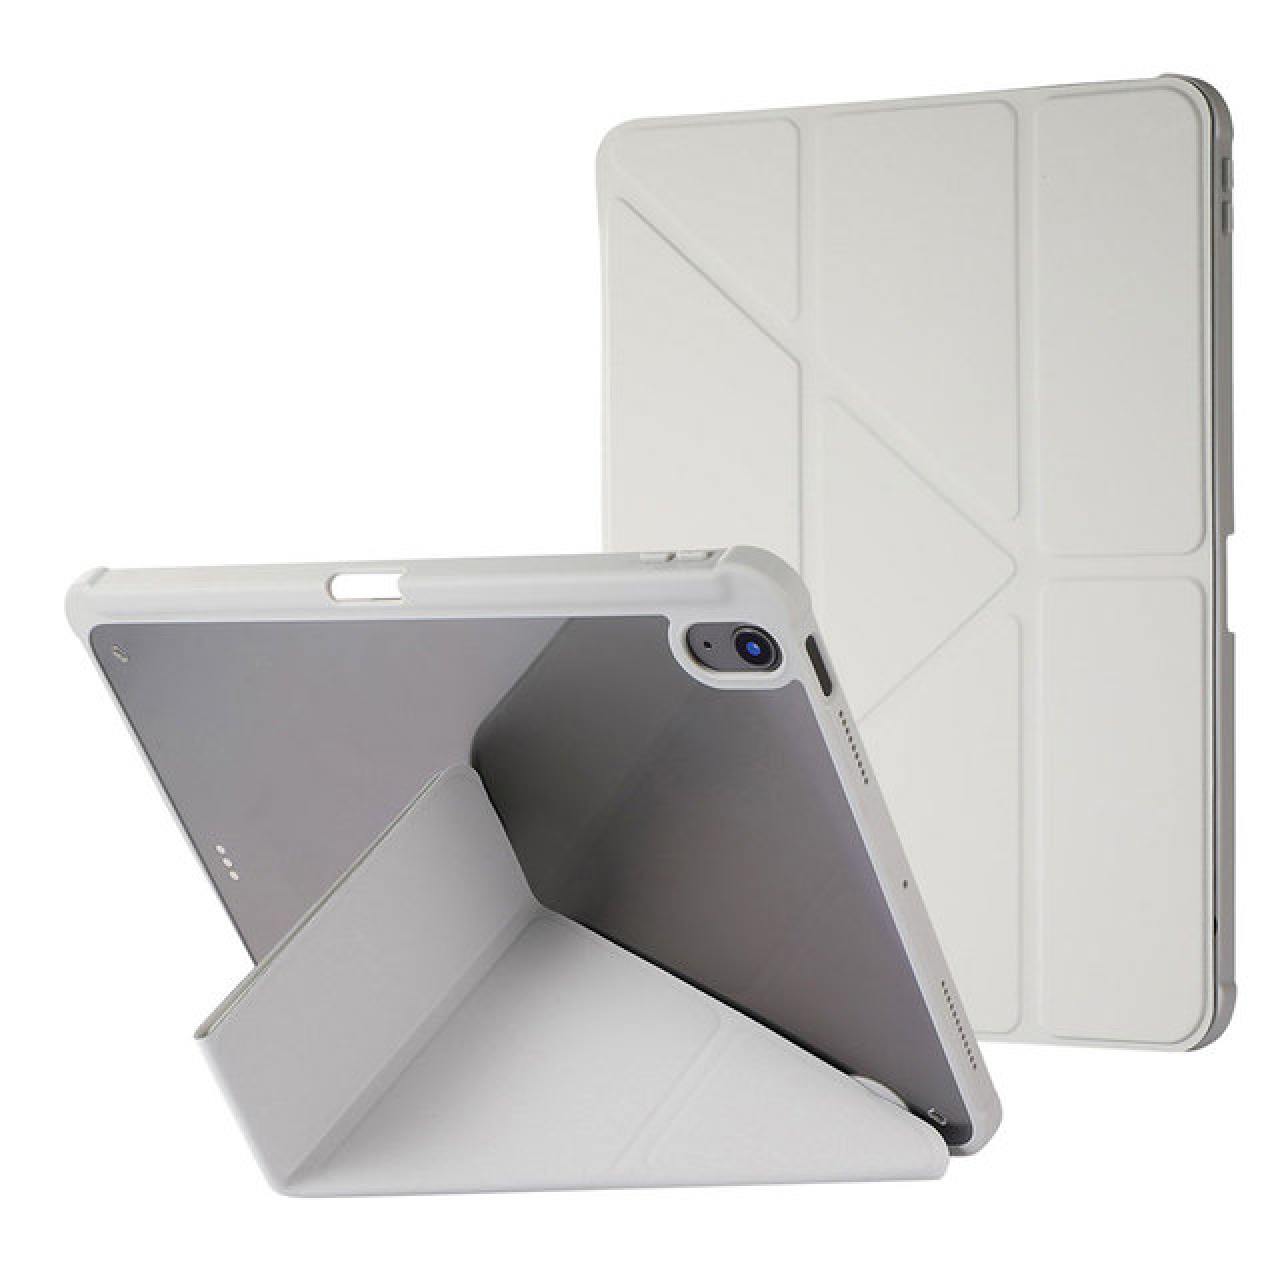 Θήκη Τάμπλετ Μαγνητική Apple iPad pro 12.9 inch 18-20-21-22 με Προστασία Κάμερας και Θέση για Γραφίδα - Tablet Case - Grey